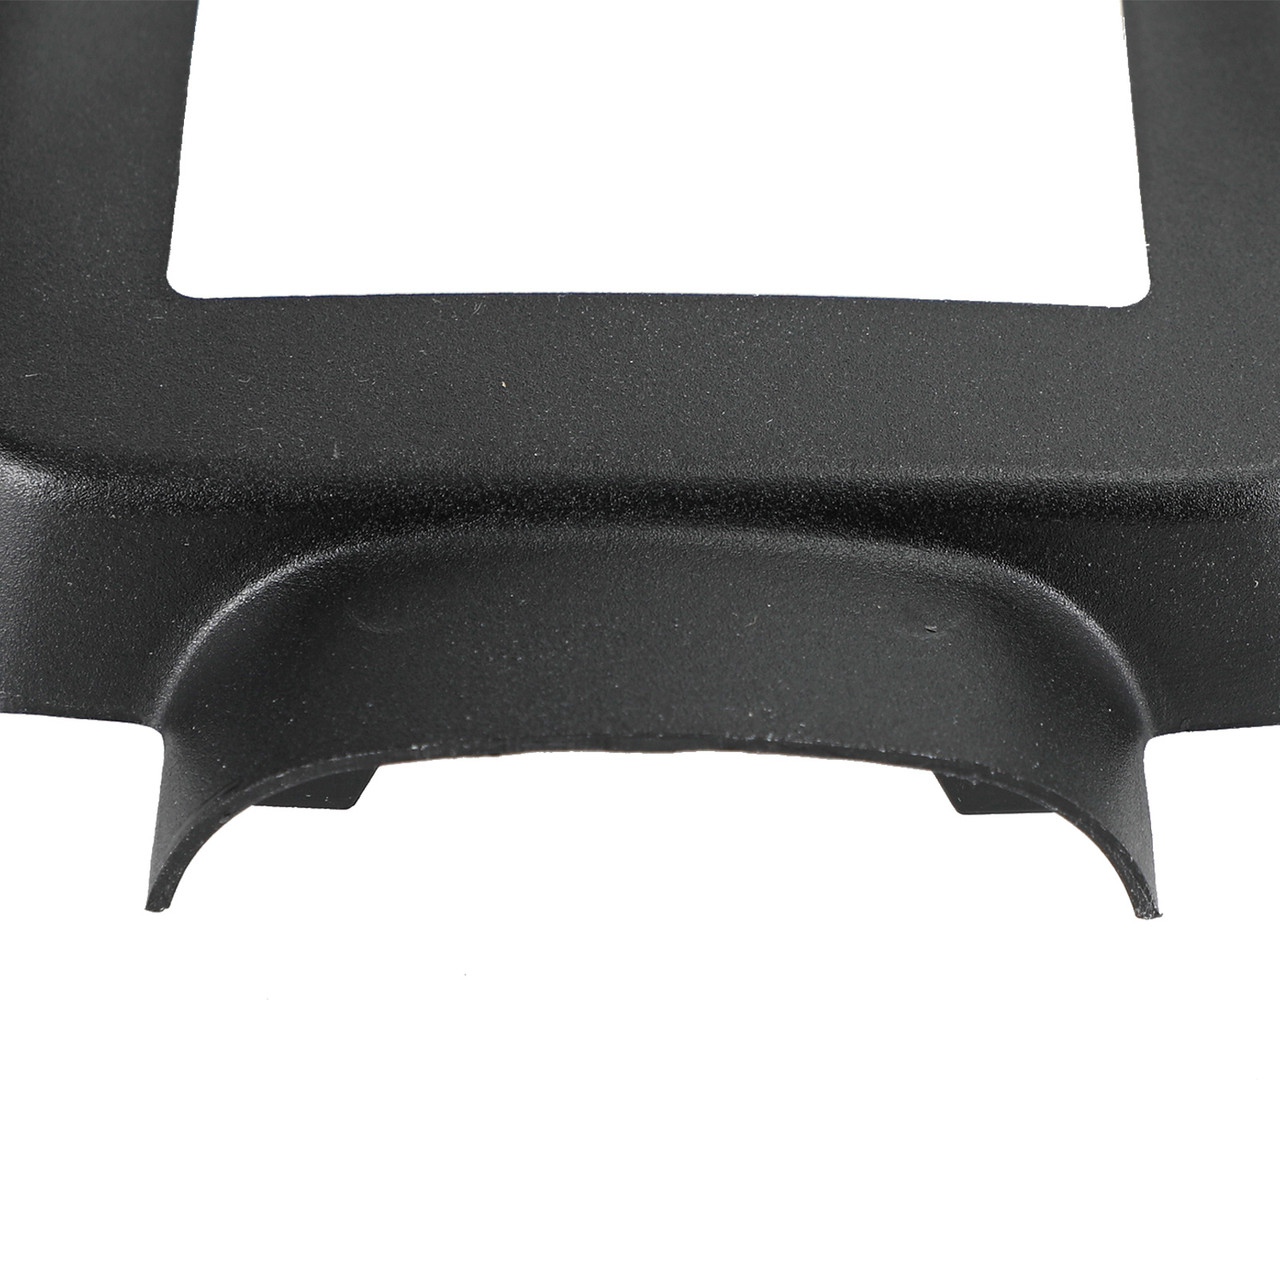 Front Radar Round Sensor Frame Trim Cover For VW GOLF MK7 13-16